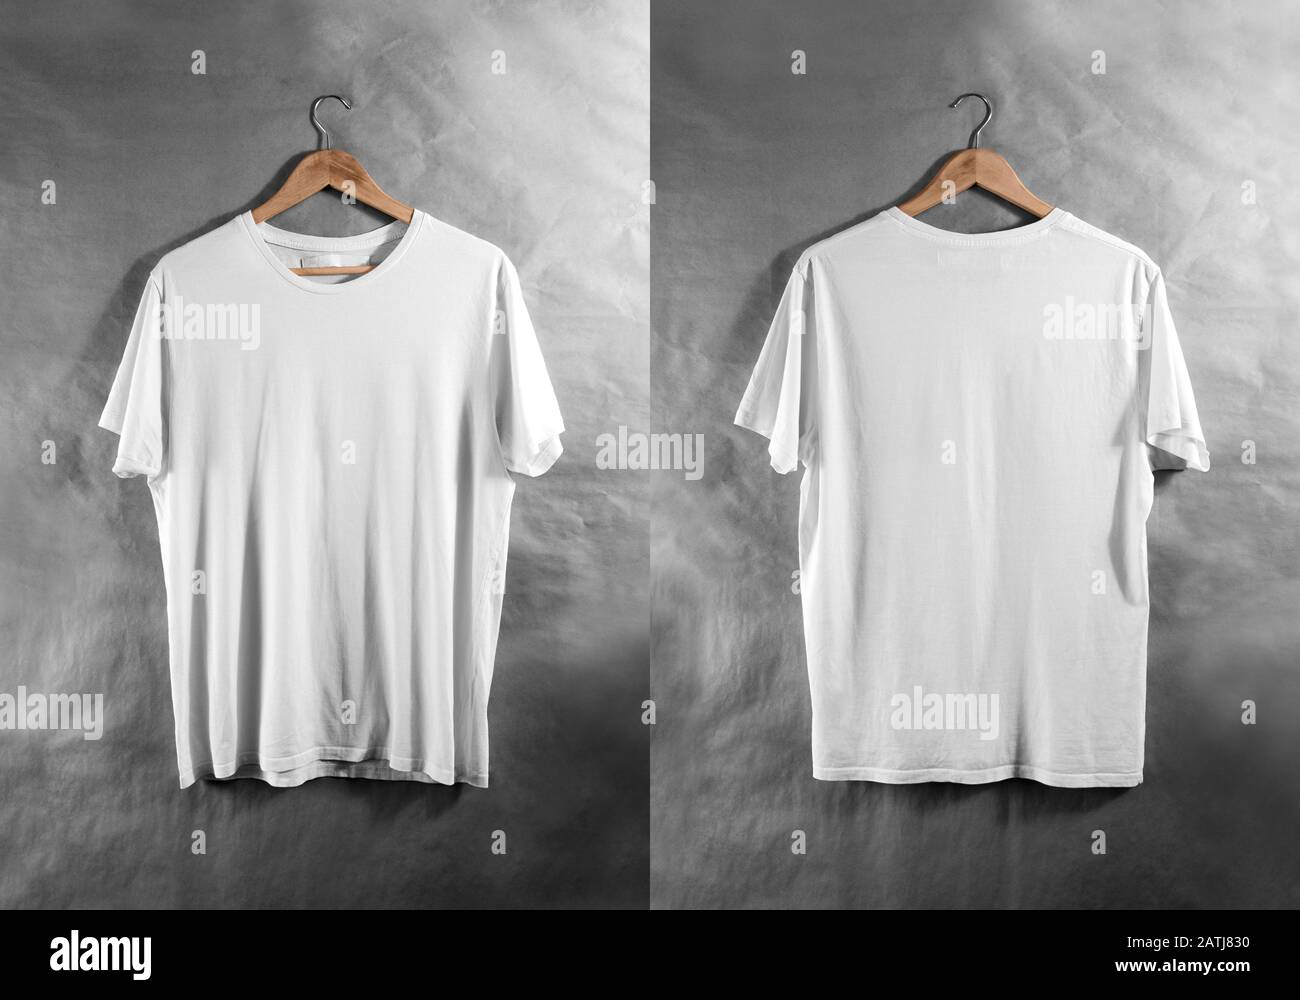 https://c8.alamy.com/comp/2ATJ830/blank-white-t-shirt-front-back-side-view-hanger-design-mockup-2ATJ830.jpg